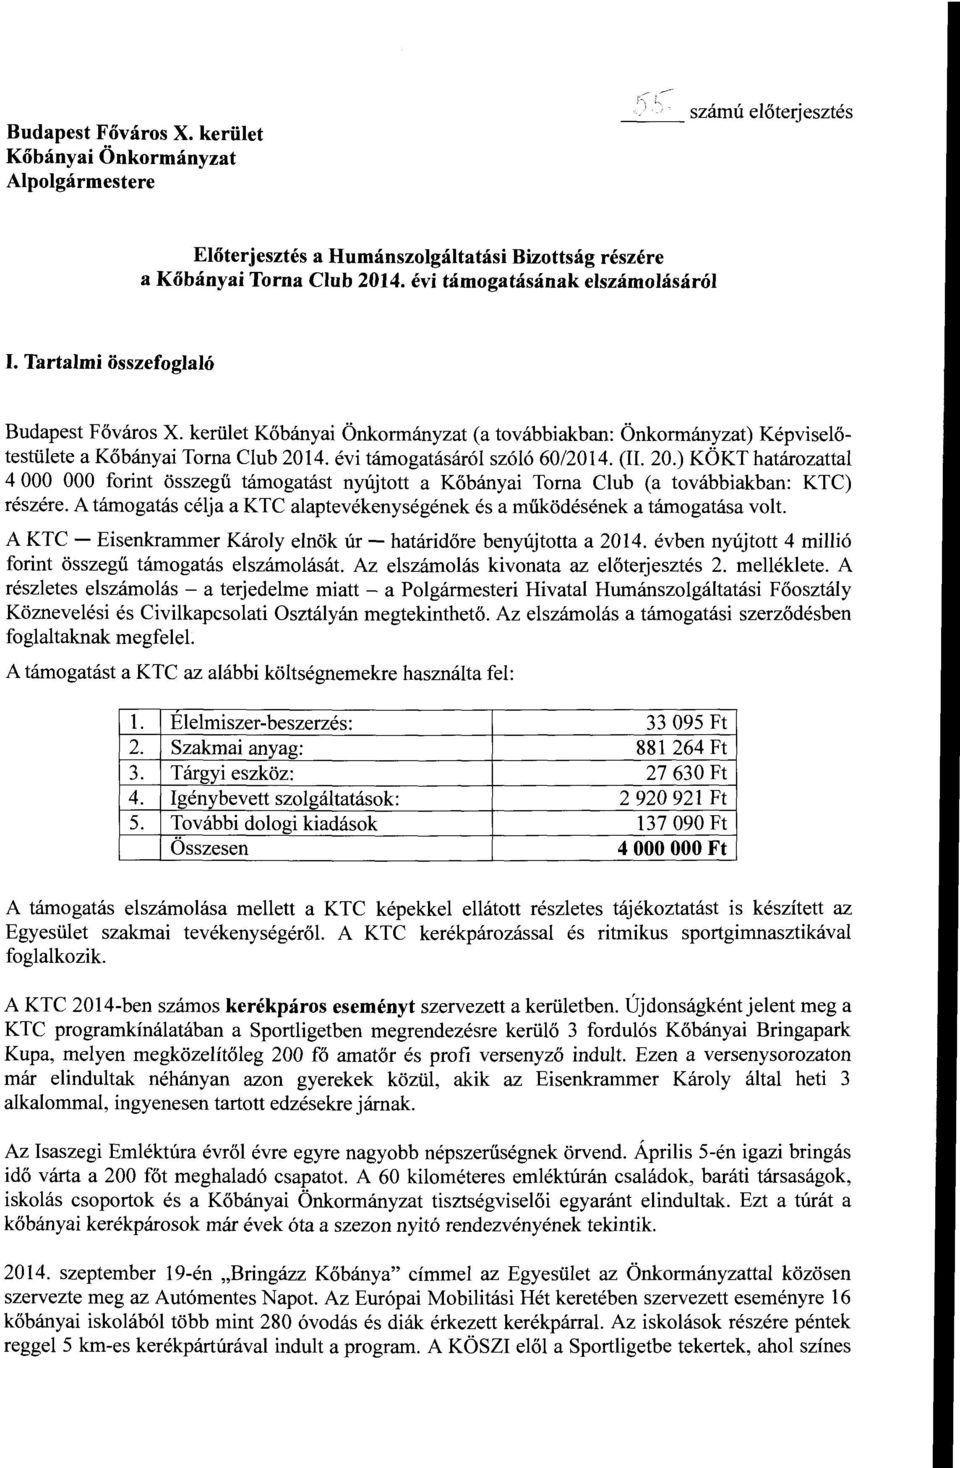 4. évi támogatásáró szóó 60/2014. (II. 20.) KÖKT határozatta 4 OOO OOO forint összegű támogatást nyújtott a Kőbányai Torna Cub (a továbbiakban: KTC) részére.